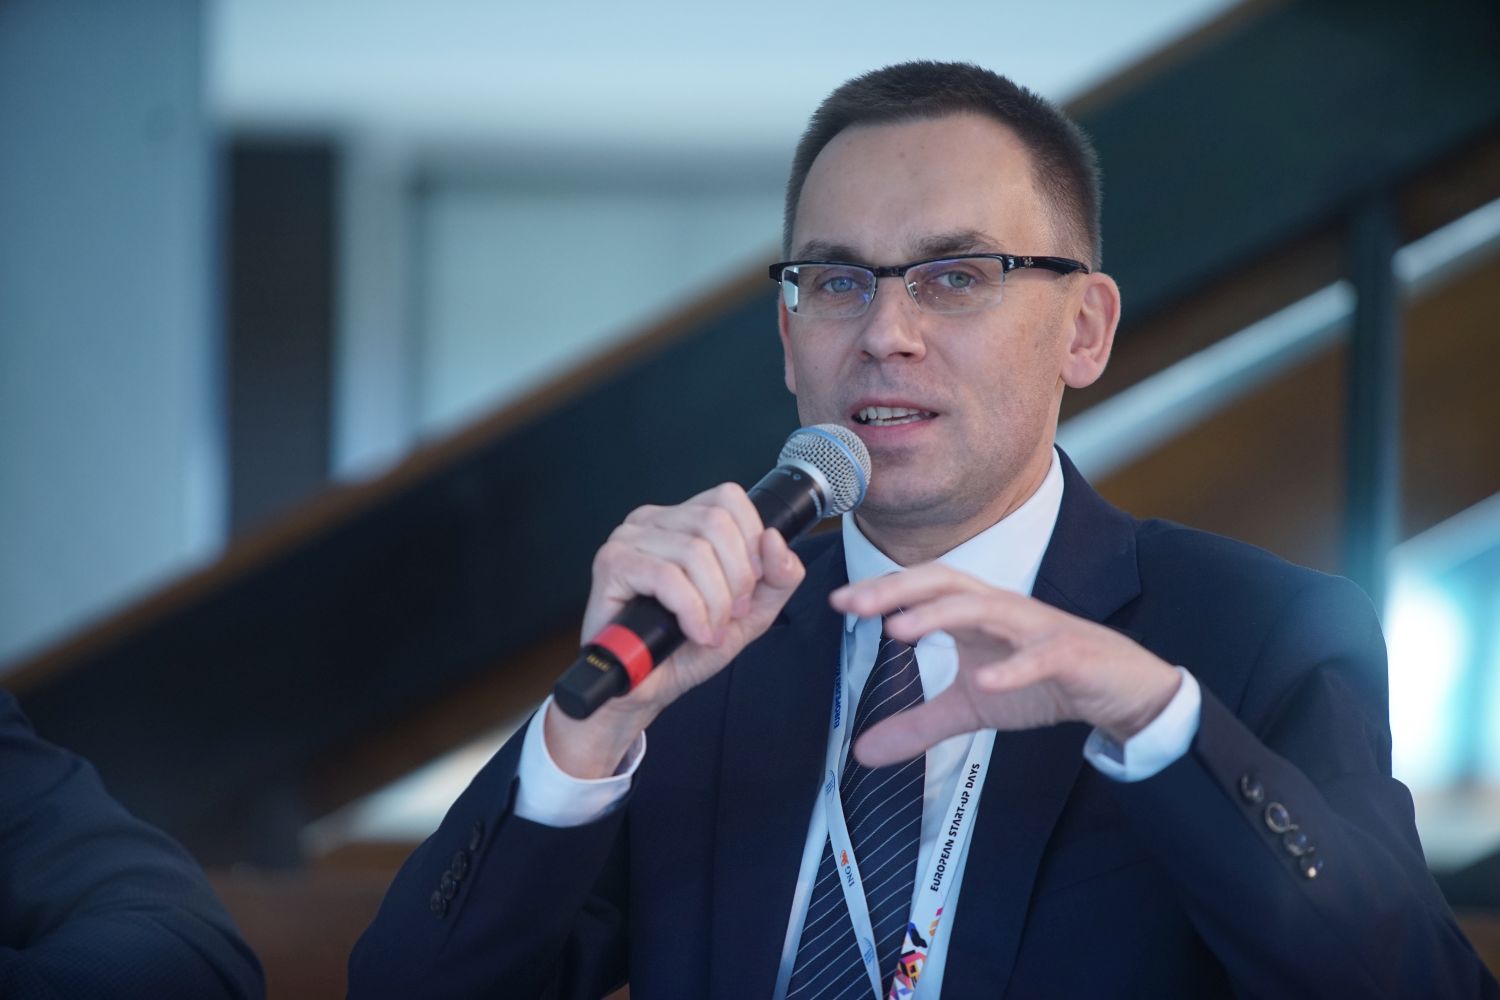 jciech Kuśpik, prezes PTWP, Inicjator Europejskiego Kongresu Gospodarczego (Fot. PTWP)